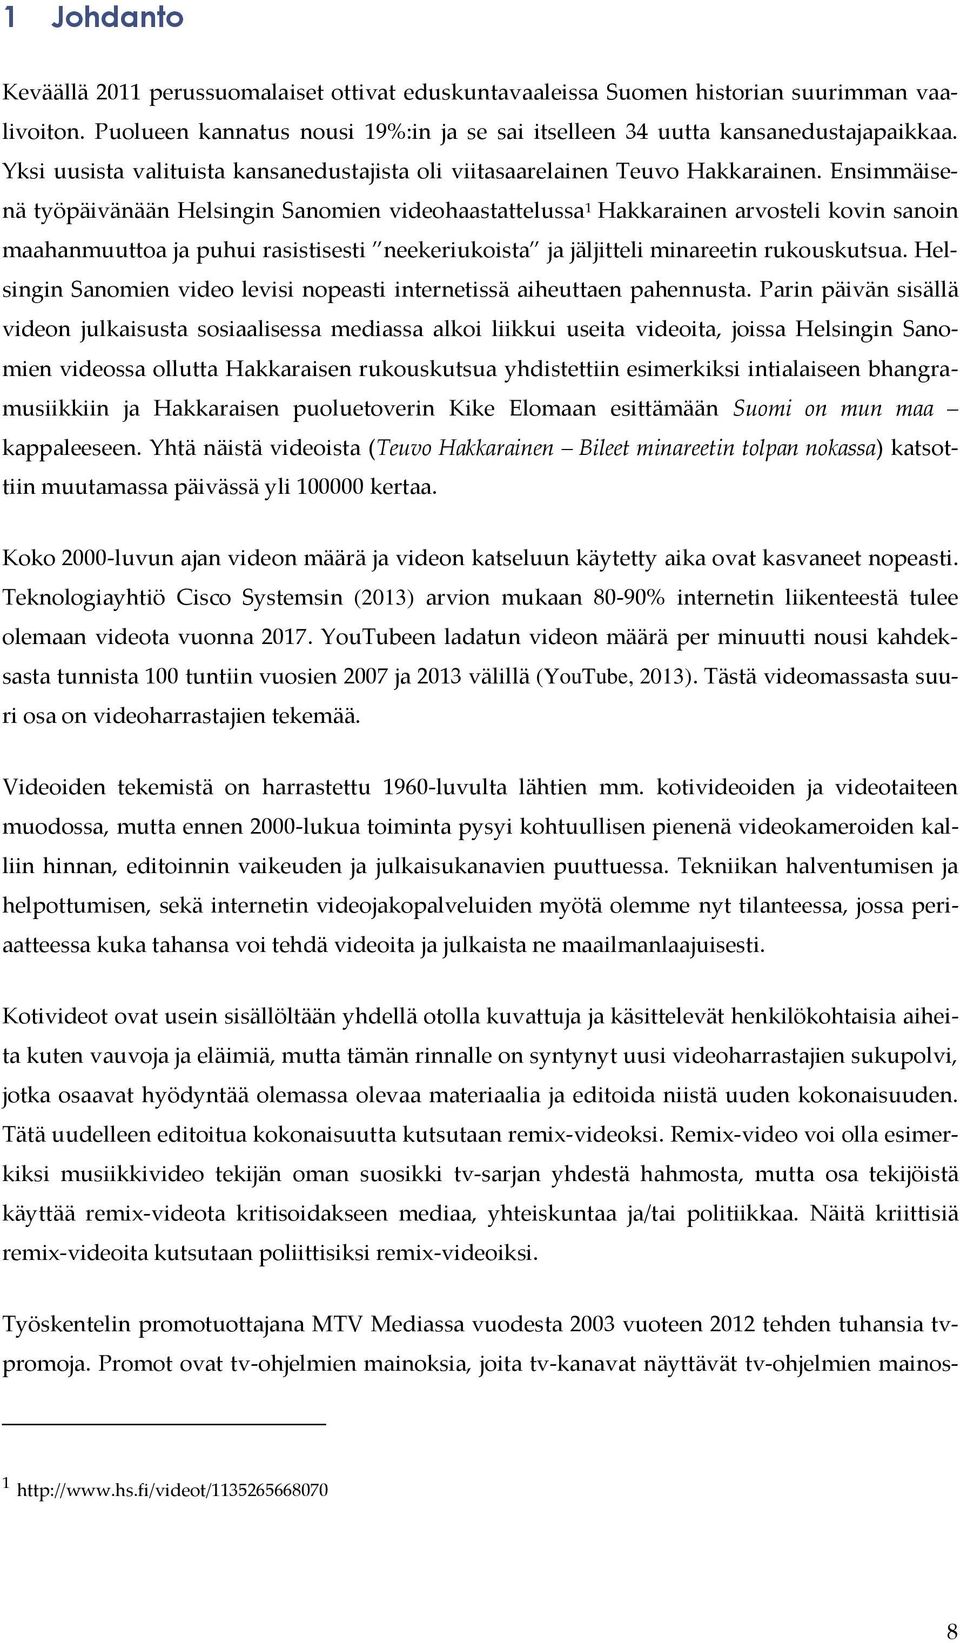 Ensimmäisenä työpäivänään Helsingin Sanomien videohaastattelussa 1 Hakkarainen arvosteli kovin sanoin maahanmuuttoa ja puhui rasistisesti neekeriukoista ja jäljitteli minareetin rukouskutsua.